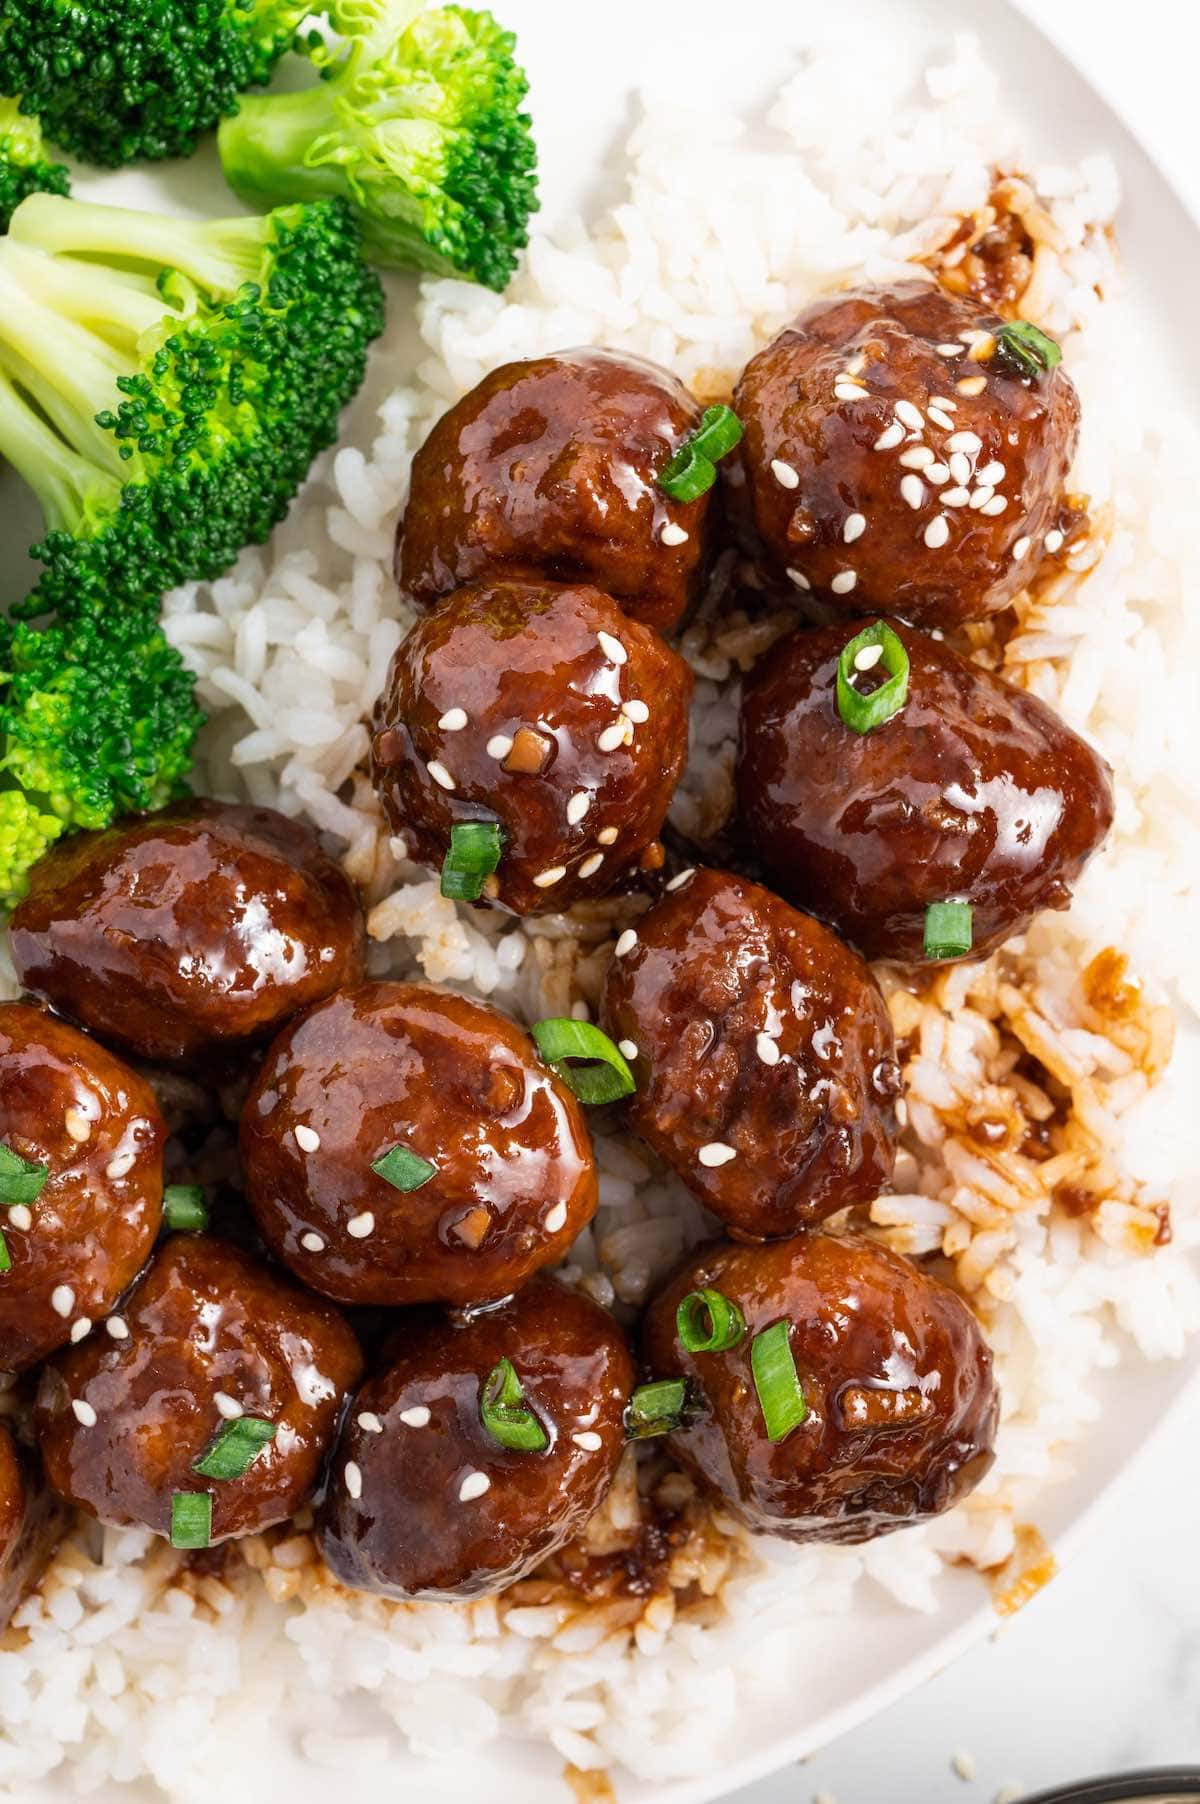 Teriyaki Meatballs over rice with broccoli on the side.